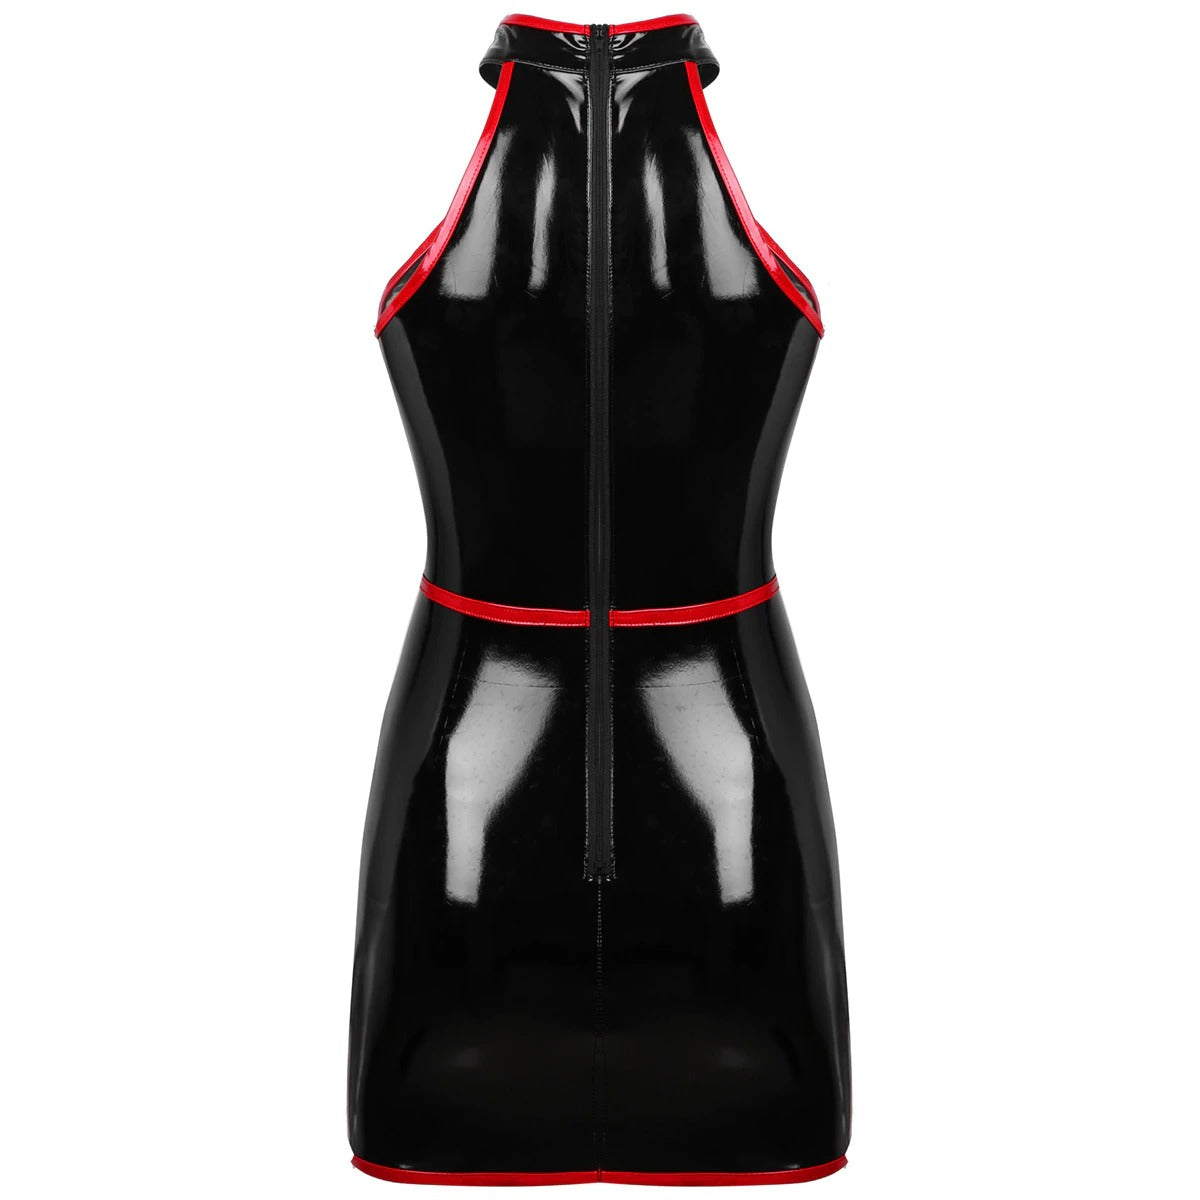 Slim Fit Bodycon Dress for Pole Dance / Women's Wetlook Sleeveless Dress in Alternative Apparel - HARD'N'HEAVY